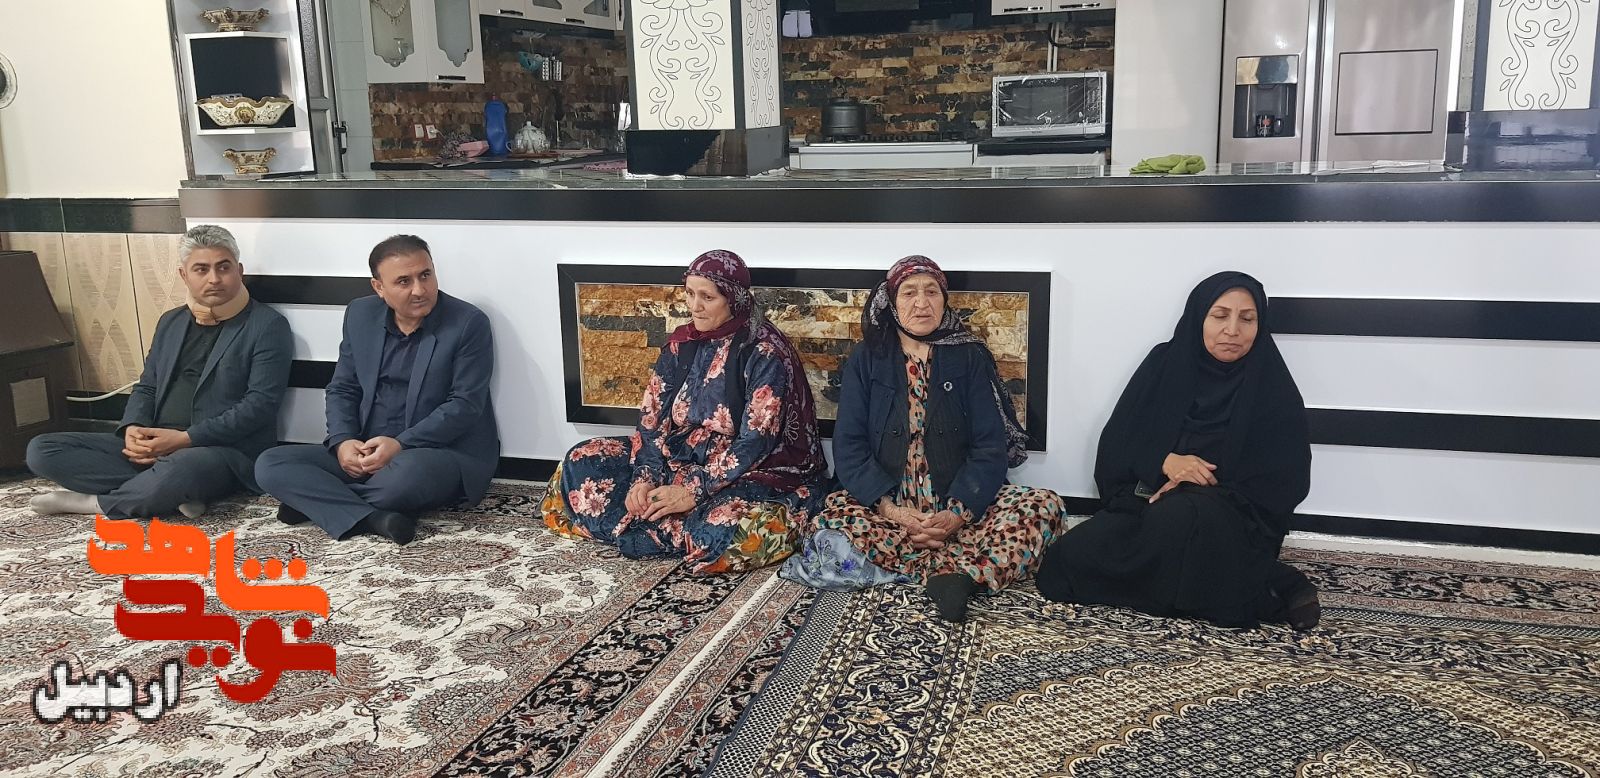 دیدار با خانواده های شهیدان«عباس پناهی»، «سیمران زیارتی» و «رمضان شاه محمدی» در پارس آباد